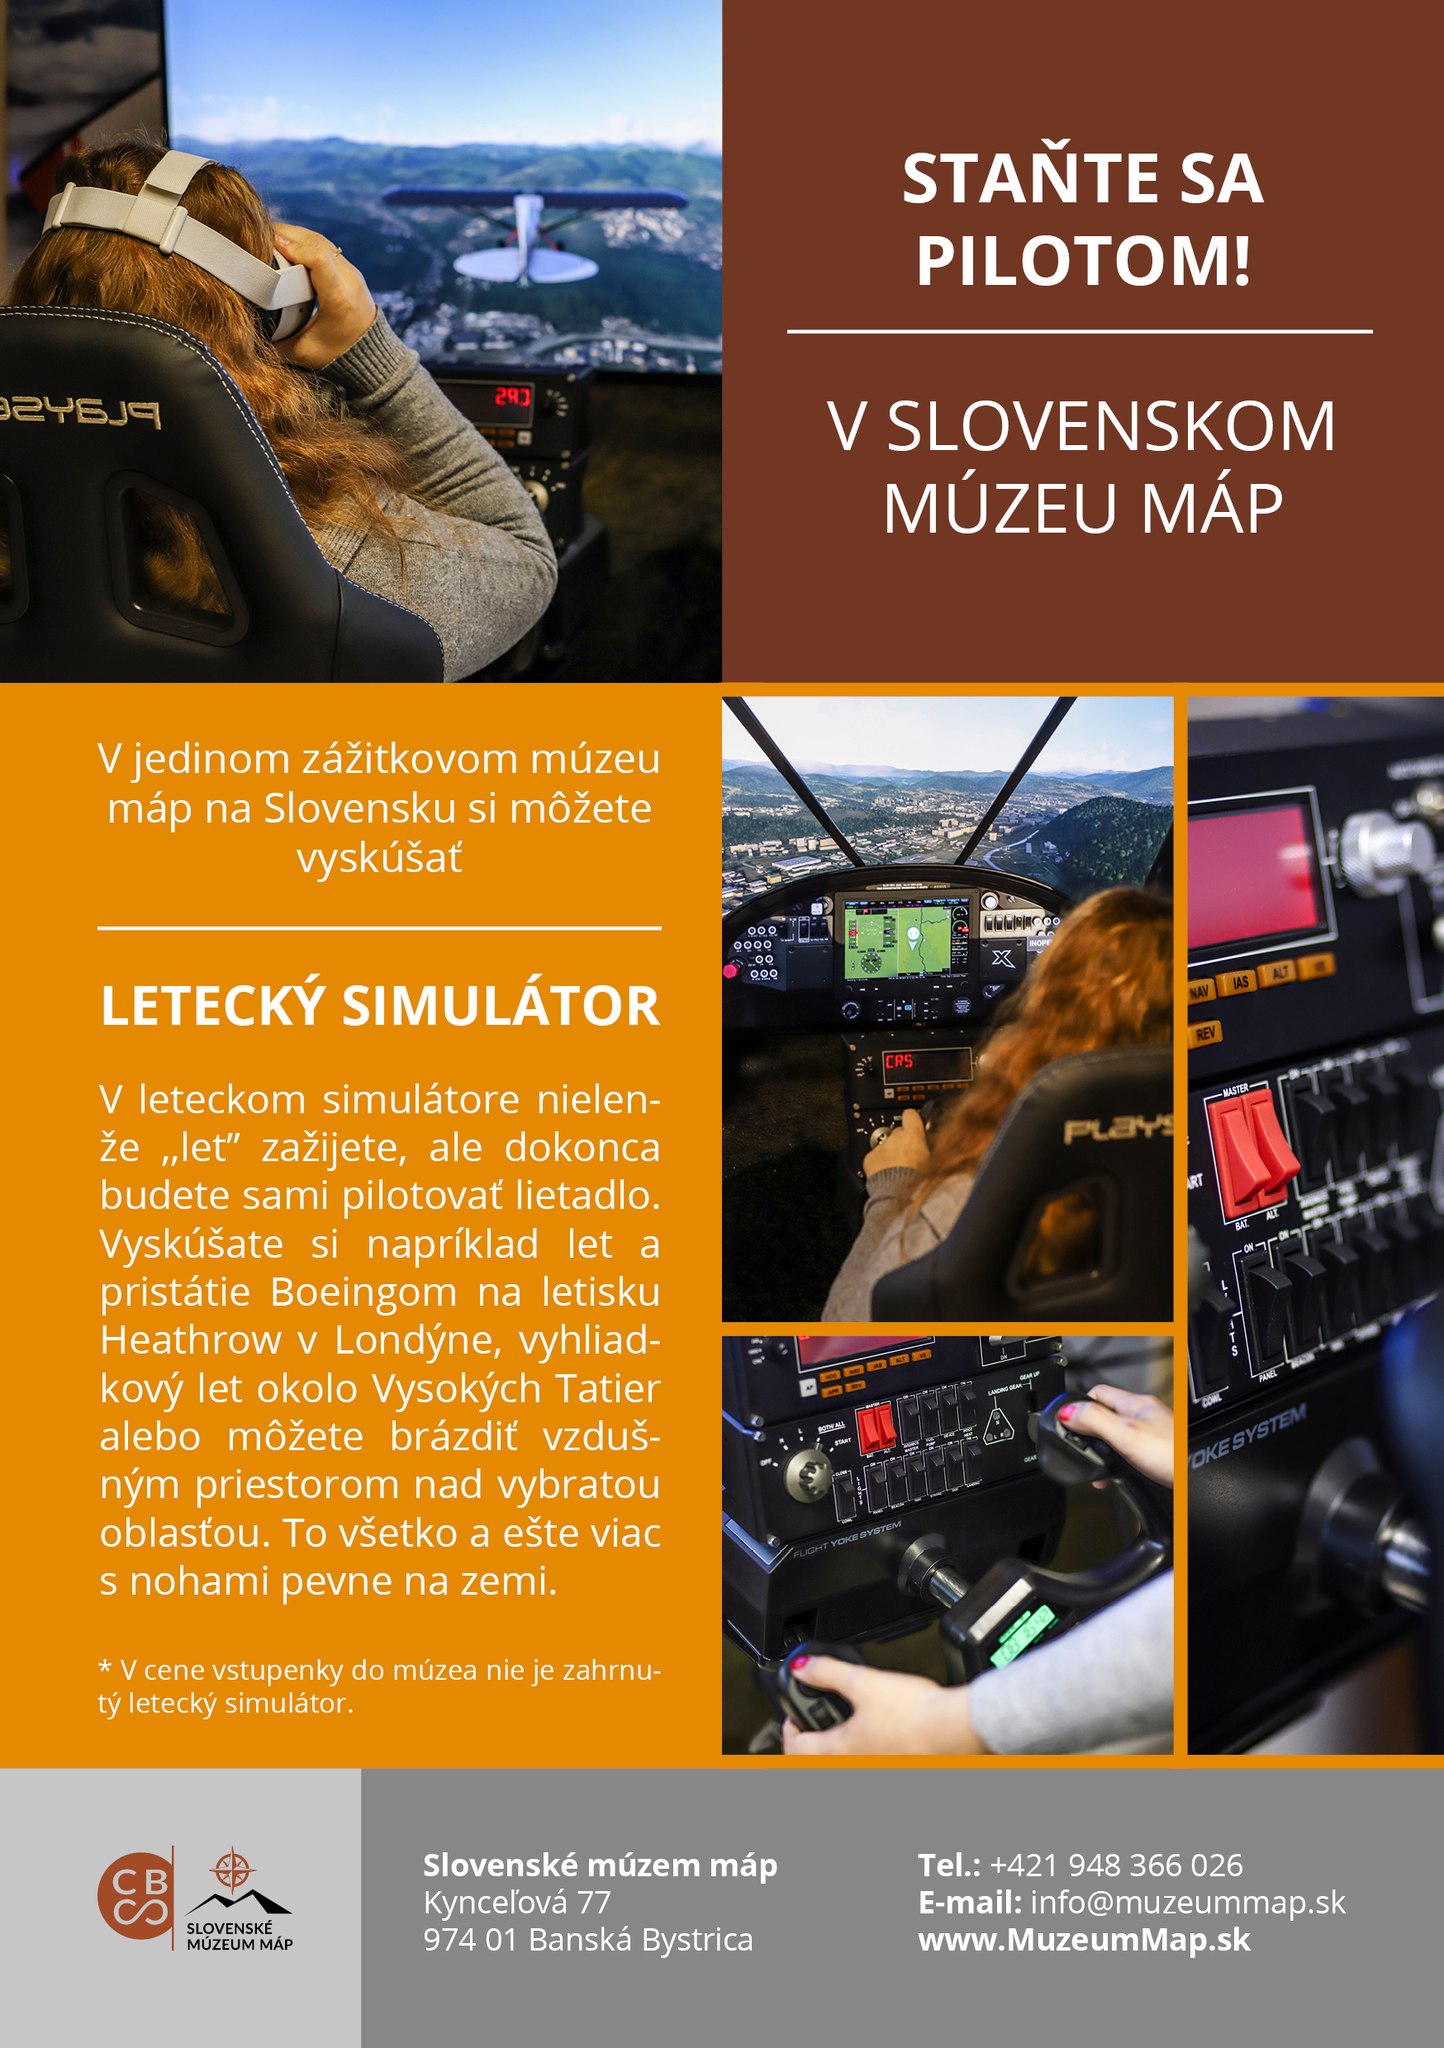 Staňte sa pilotom! 2022 Kynceľová - v Slovenskom múzeu máp